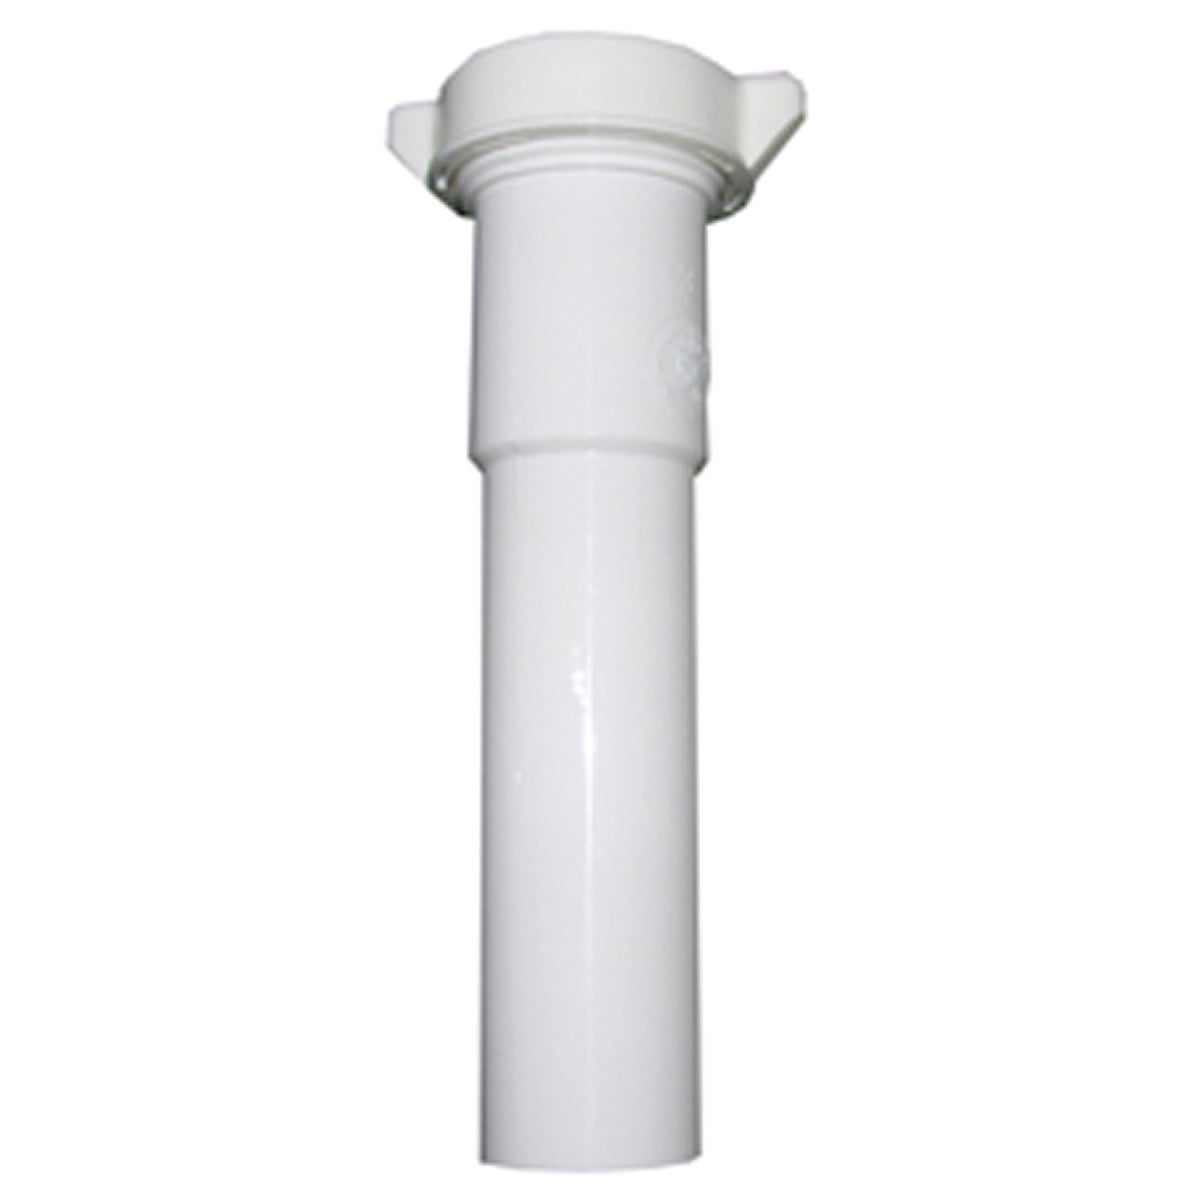 Lasco 1-1/2 In. OD x 6 In. White Plastic Extension Tube